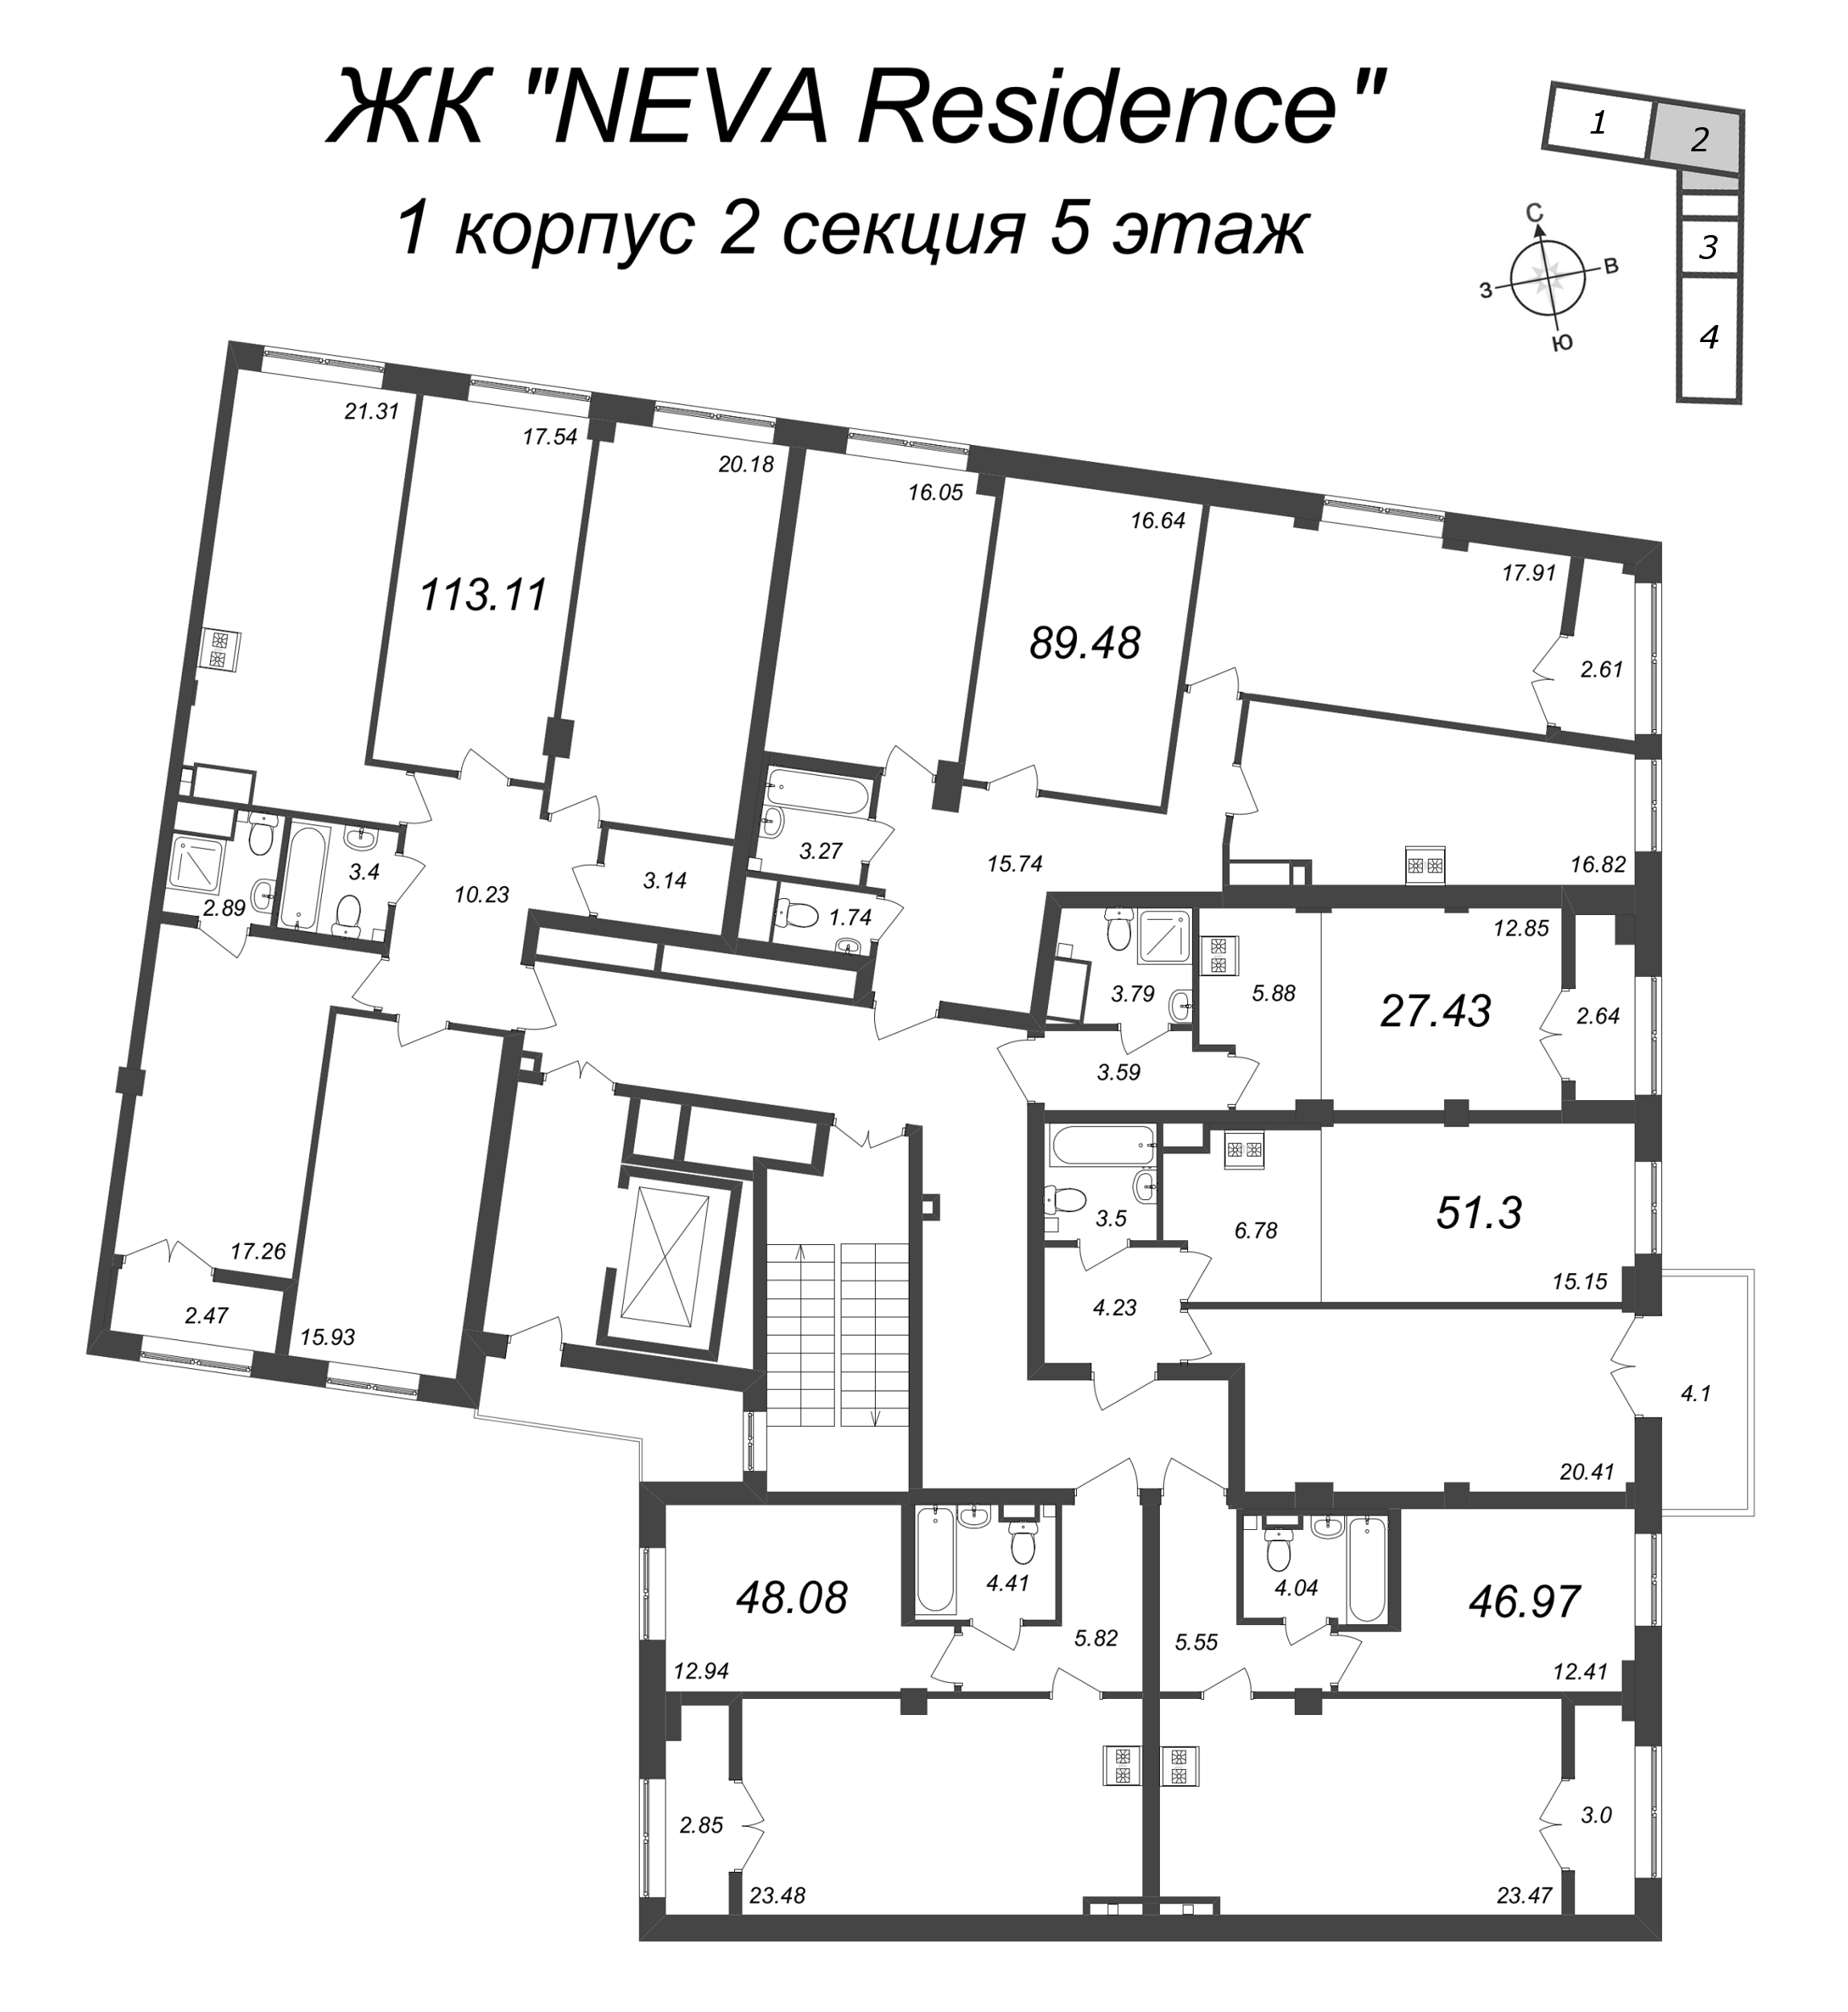 2-комнатная (Евро) квартира, 51.3 м² в ЖК "Neva Residence" - планировка этажа